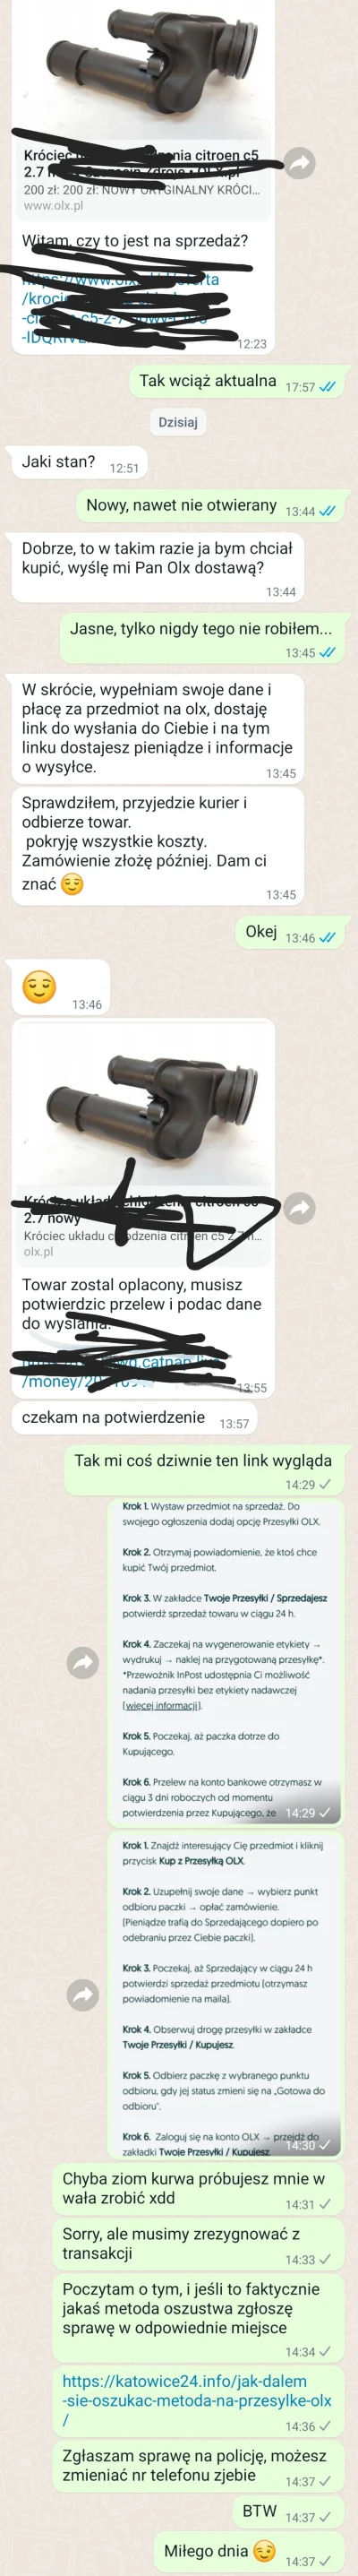 mortinger - Nowy sposób oszustwo na #olx.pl.
Uważajcie miraski
https://katowice24.inf...